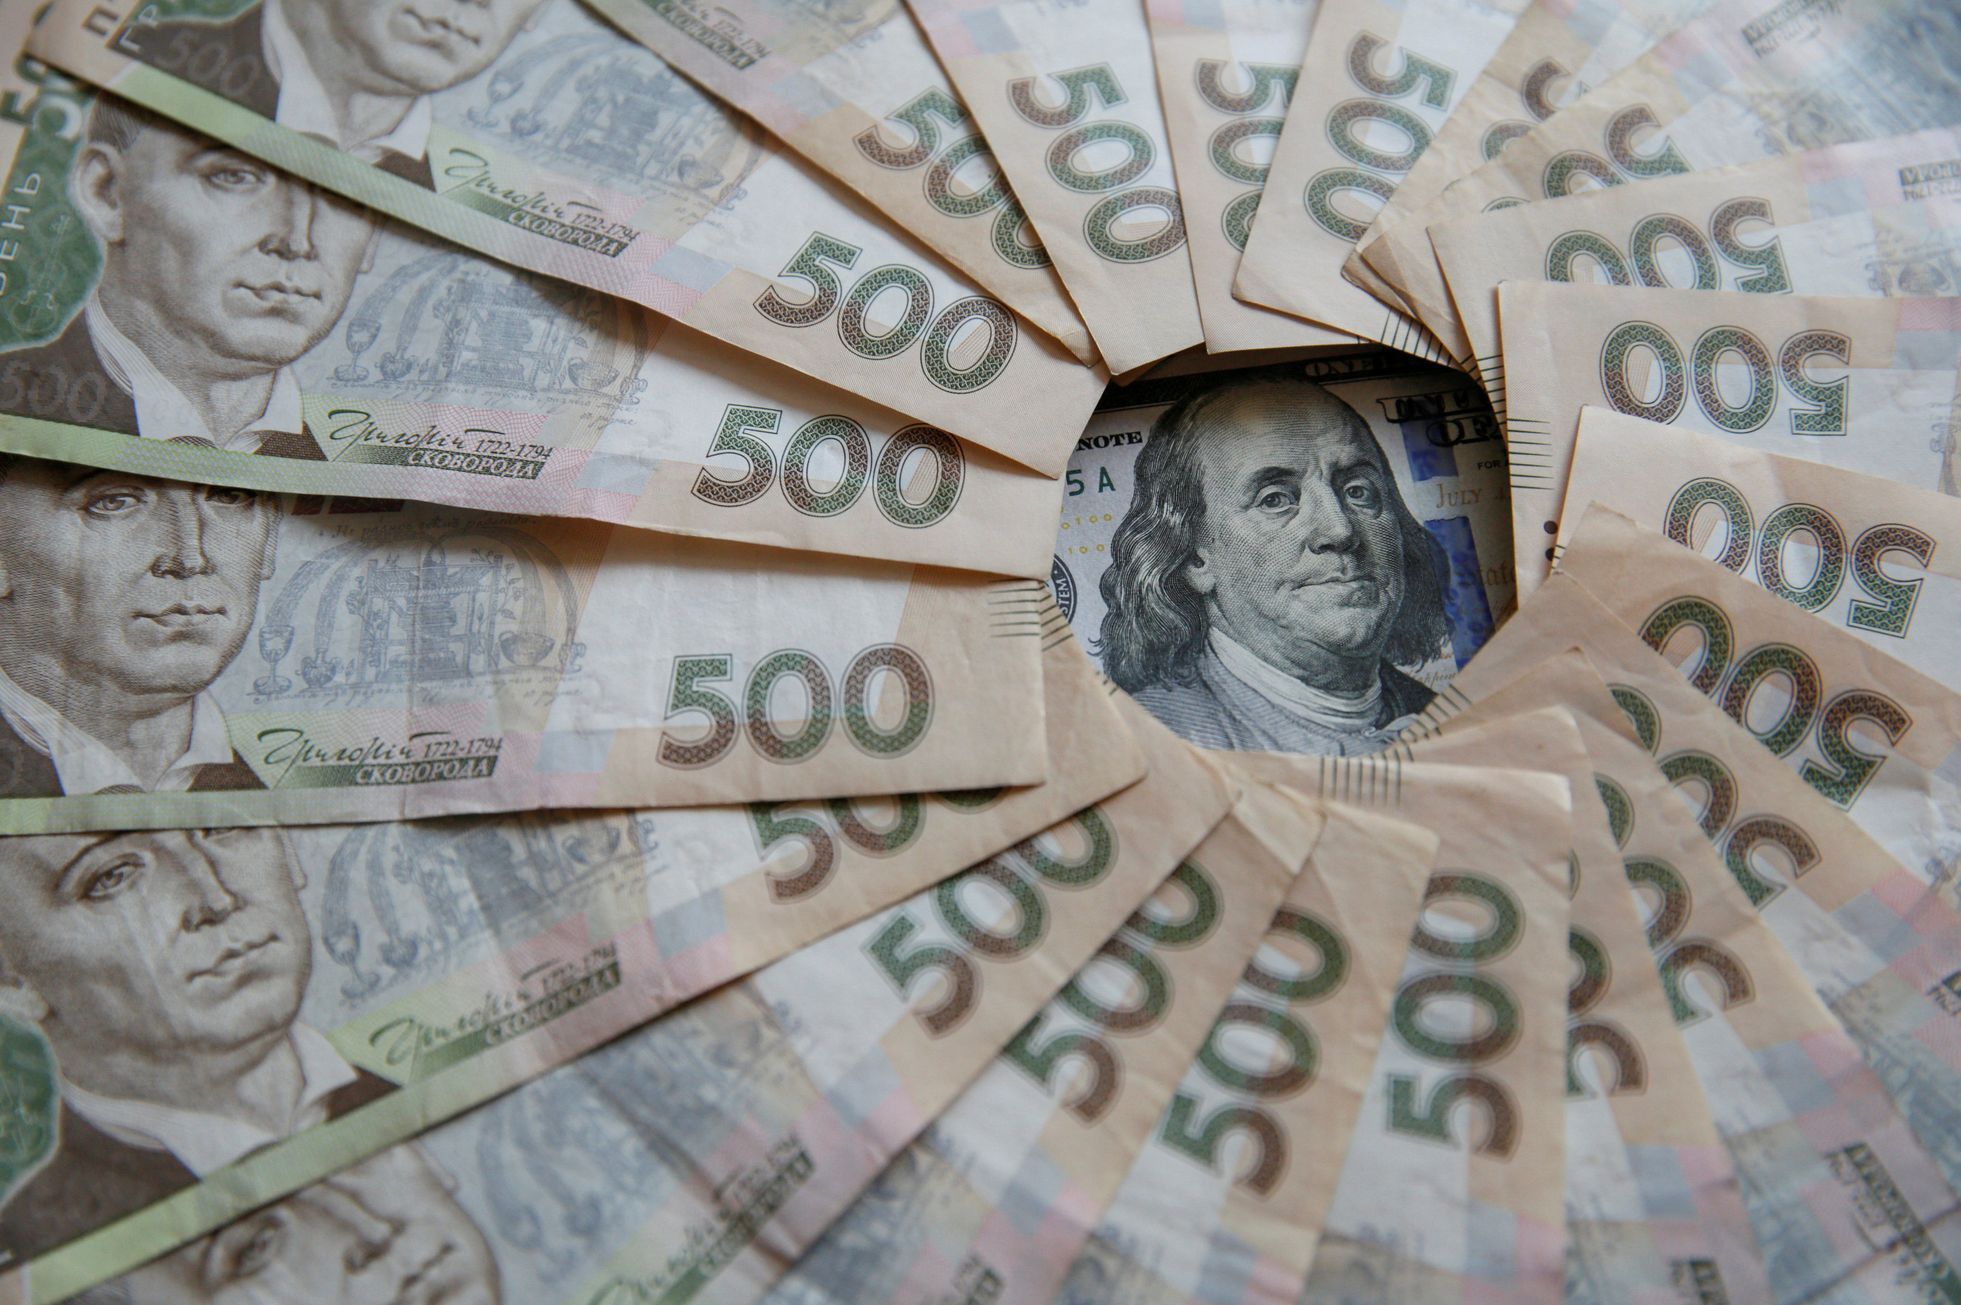 Ukrajina peníze korupce